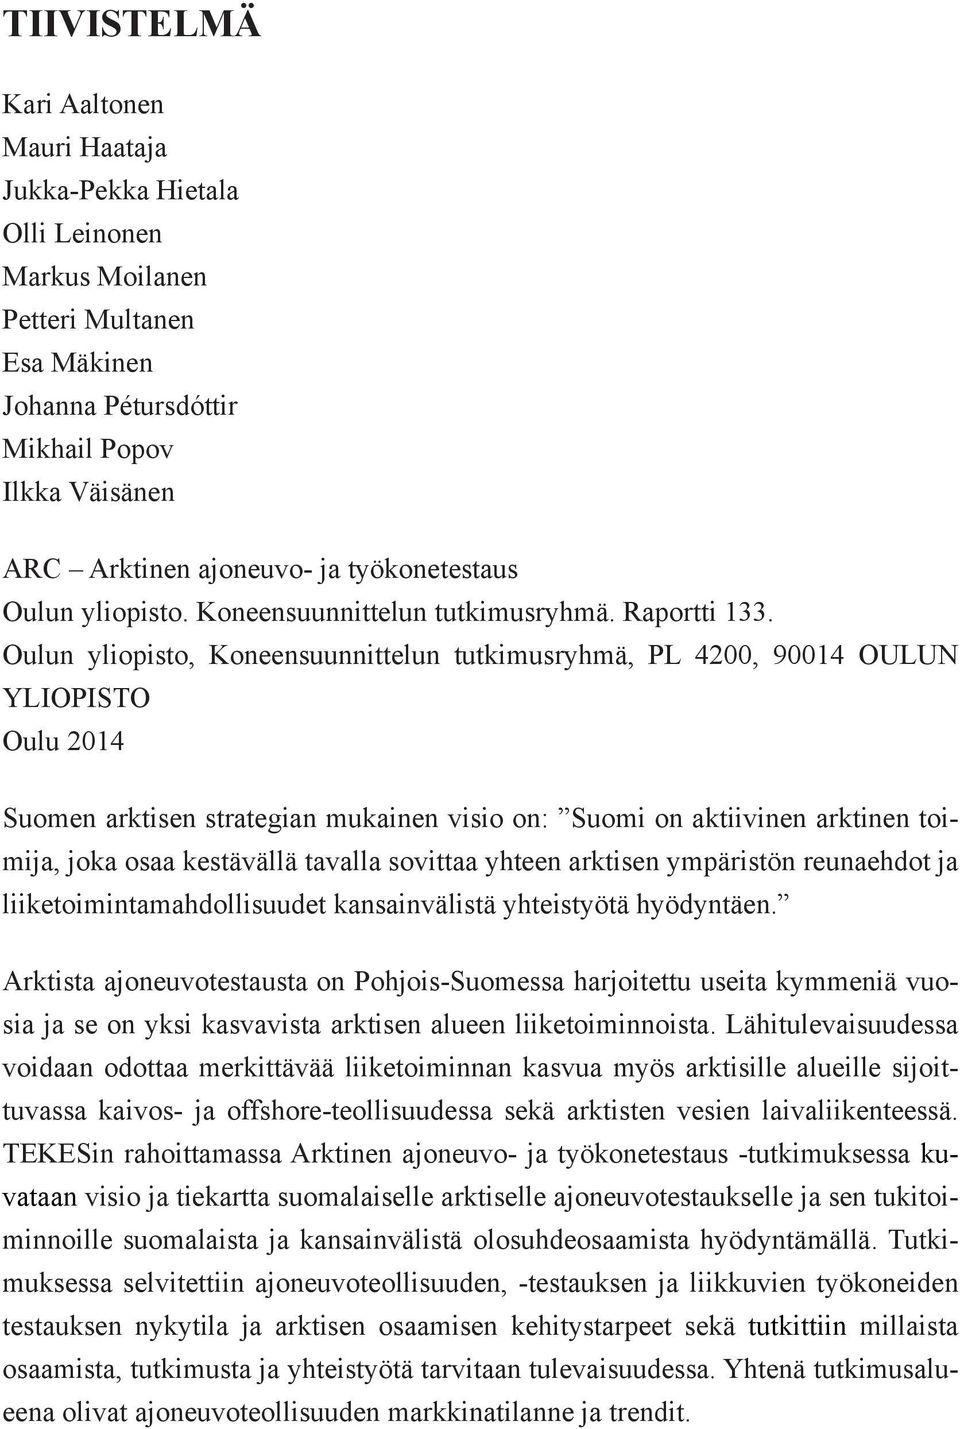 Oulun yliopisto, Koneensuunnittelun tutkimusryhmä, PL 4200, 90014 OULUN YLIOPISTO Oulu 2014 Suomen arktisen strategian mukainen visio on: Suomi on aktiivinen arktinen toimija, joka osaa kestävällä